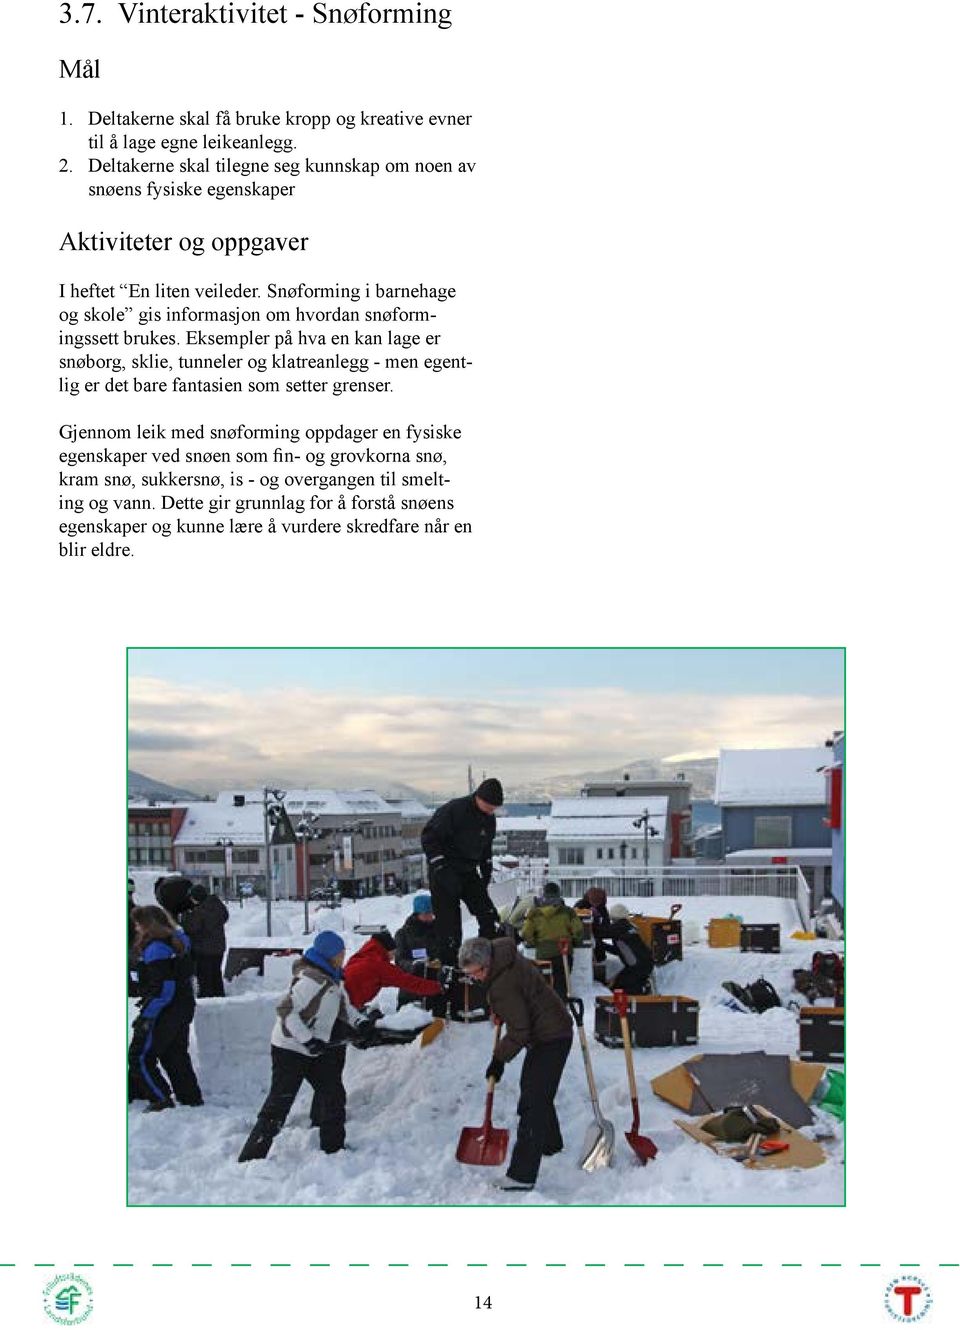 Snøforming i barnehage og skole gis informasjon om hvordan snøformingssett brukes.